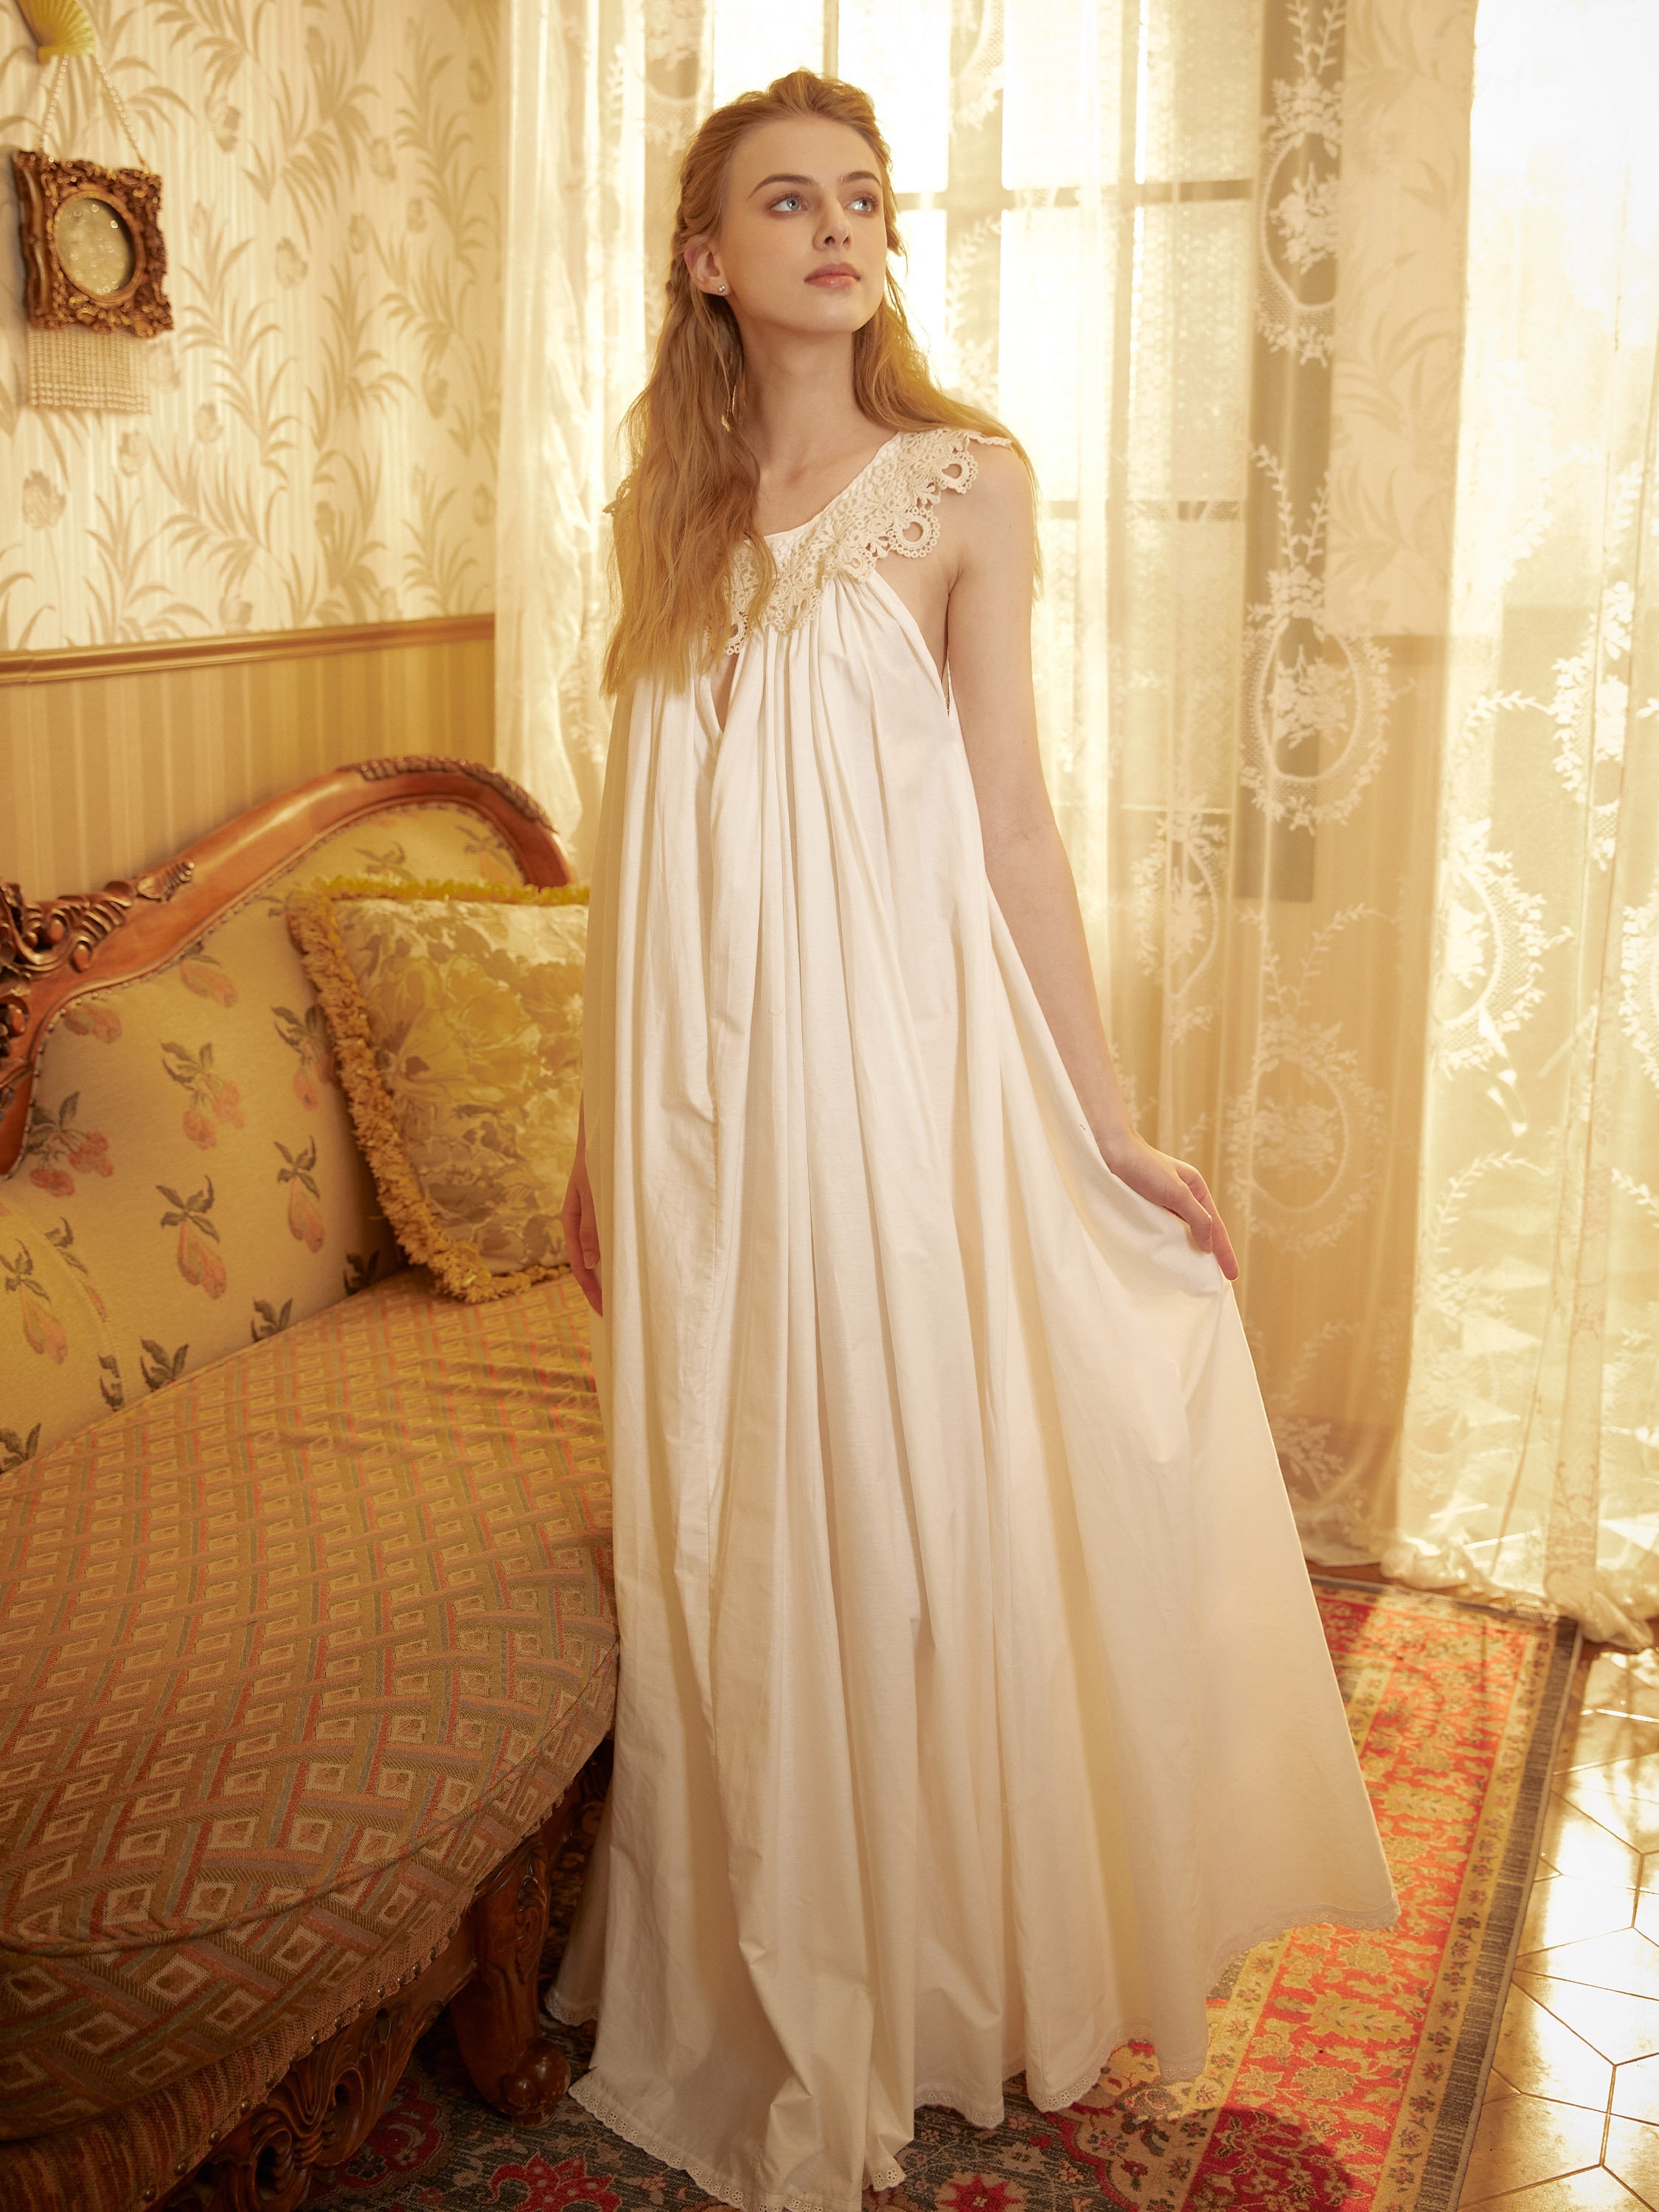 Victorian Nightgown for Women Vintage Nightie 100% Cotton